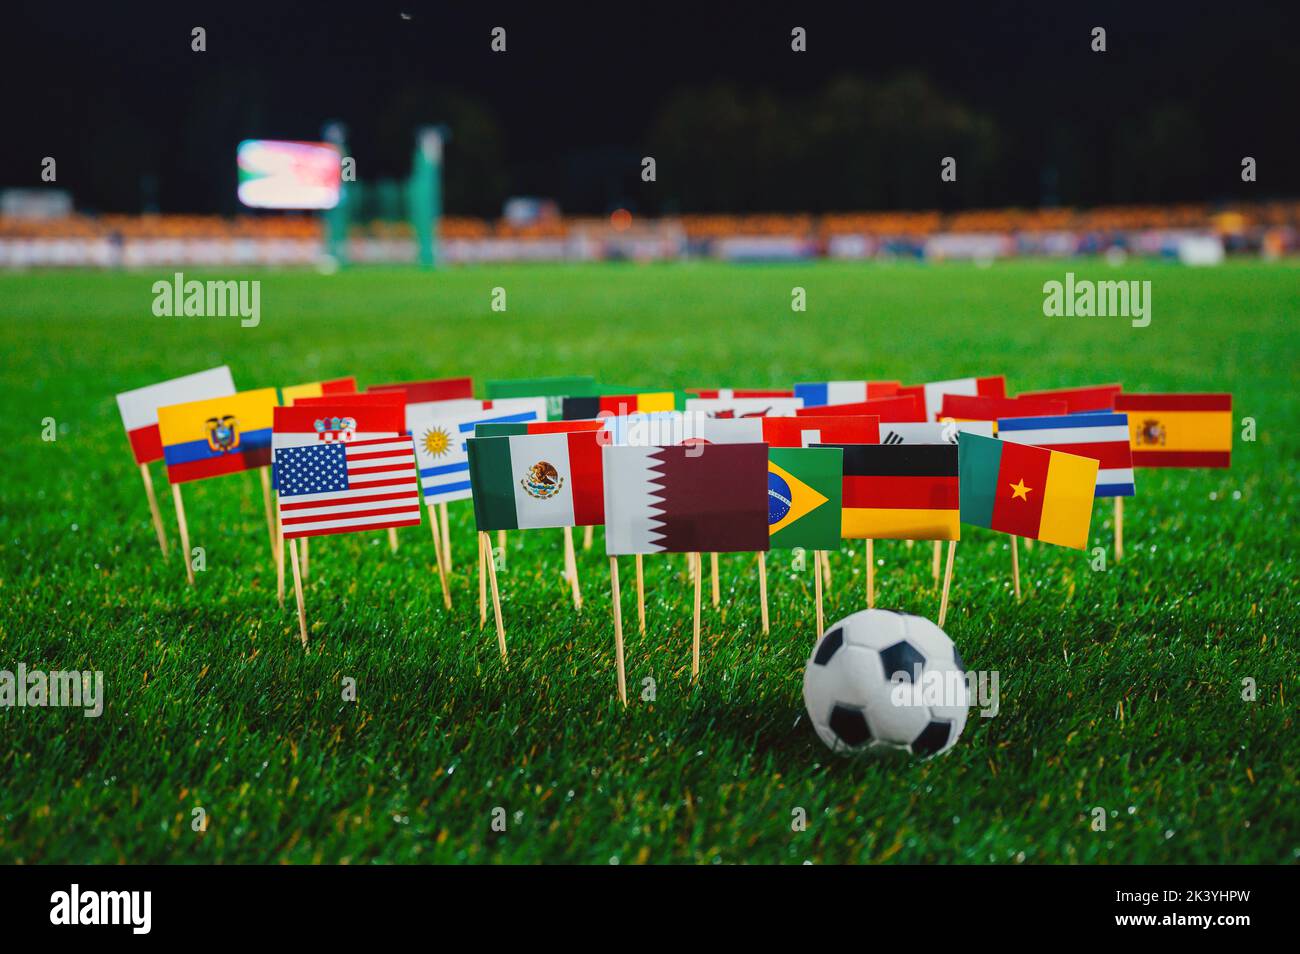 Drapeaux nationaux du Qatar, du Brésil, de l'Allemagne, des États-Unis et d'autres pays de football sur l'herbe verte du stade la nuit. Ballon de football, fond noir Banque D'Images